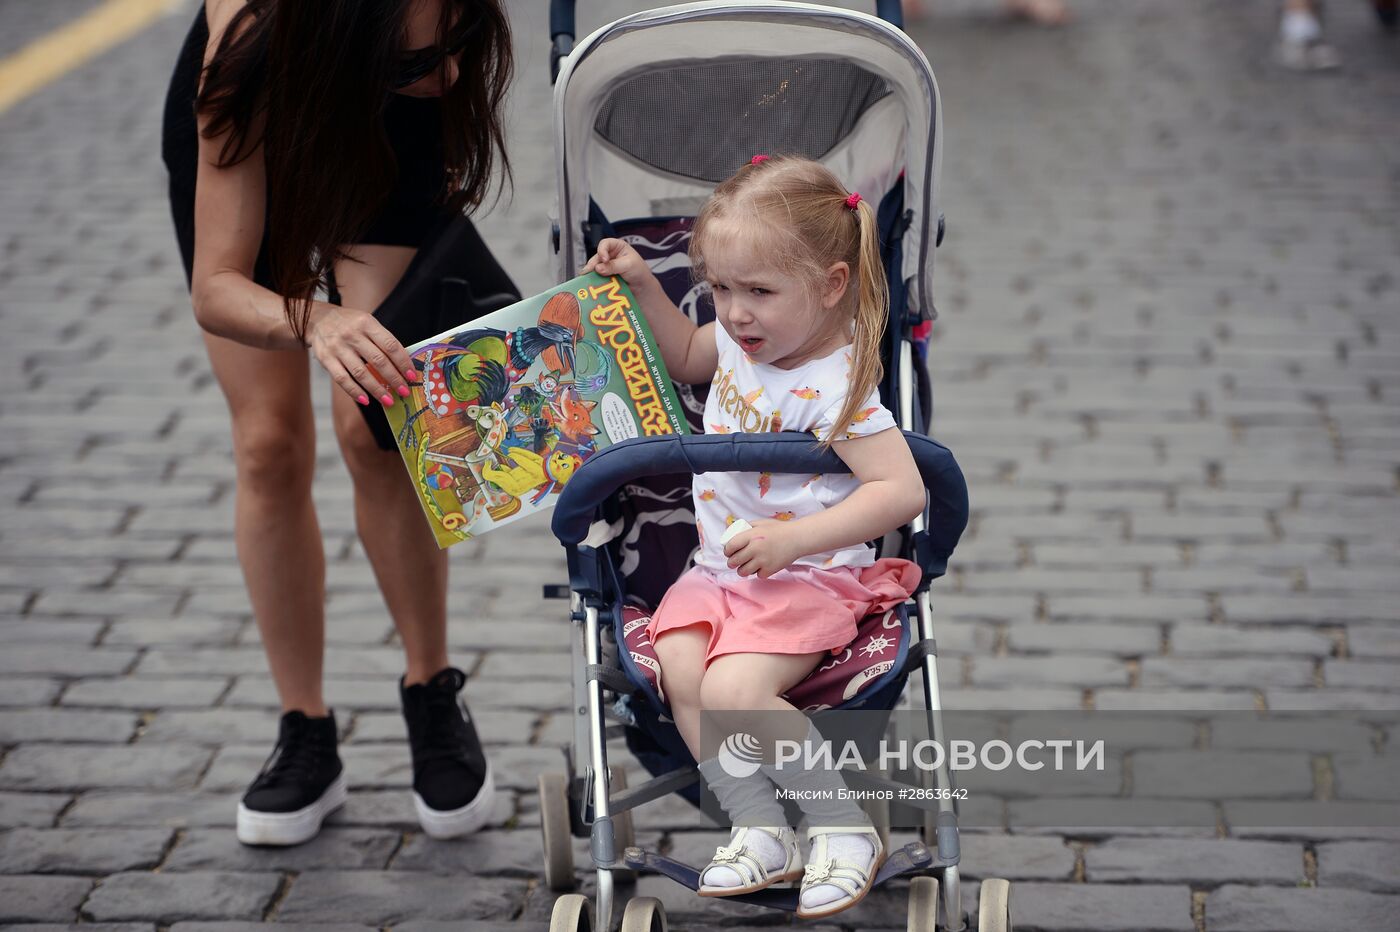 Книжный фестиваль "Красная площадь". День второй